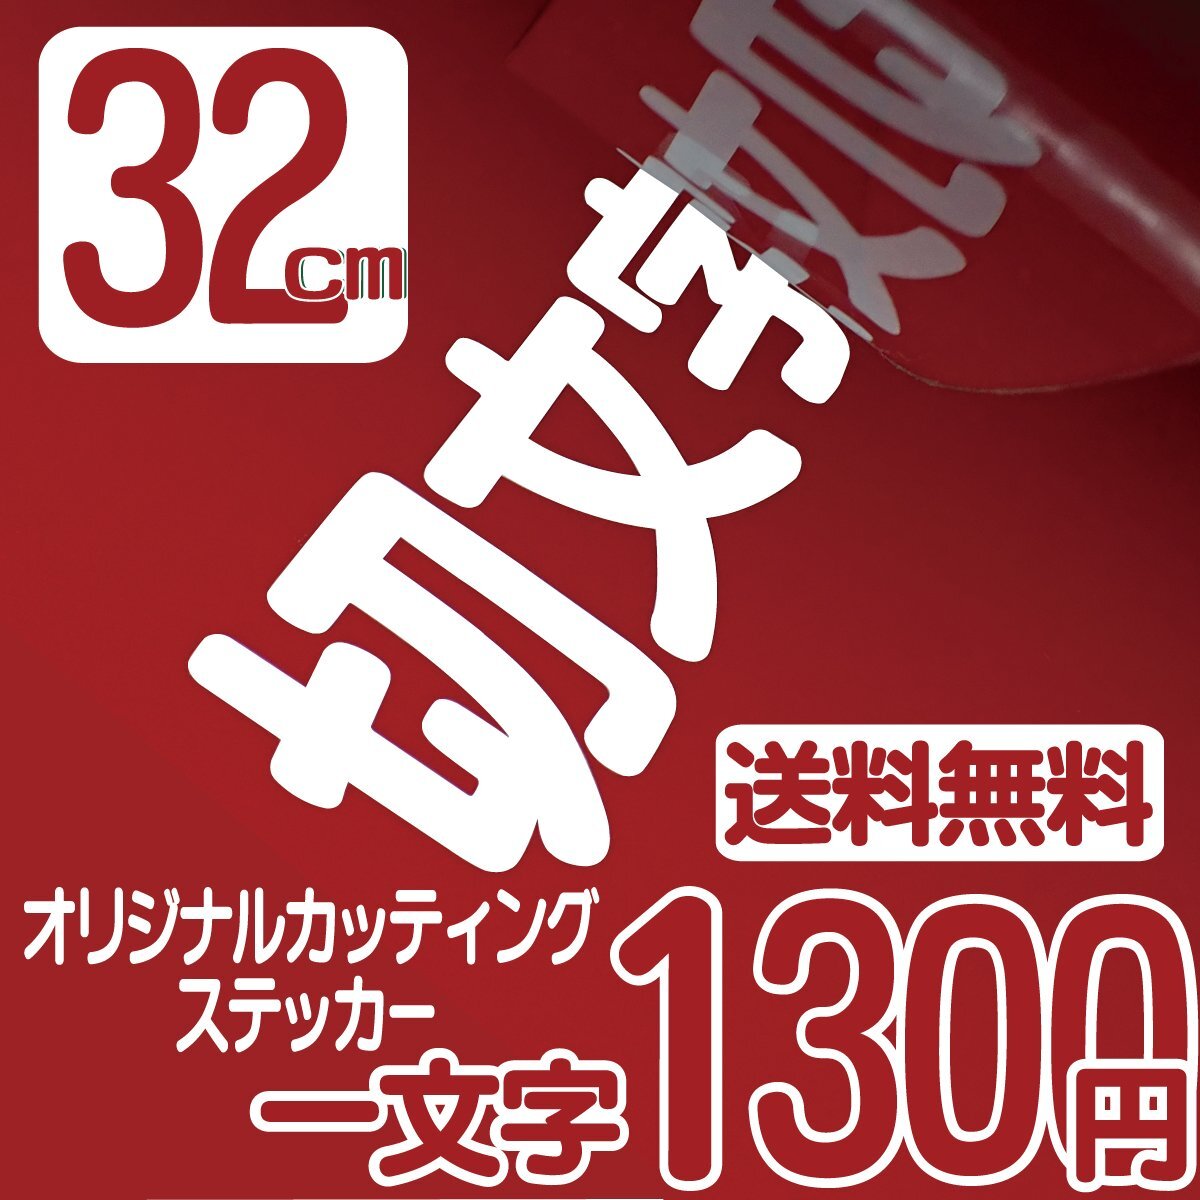 Высота символа наклейка высота 32 см на символ 1300 иен вырезанный символ для бригающего инструмента